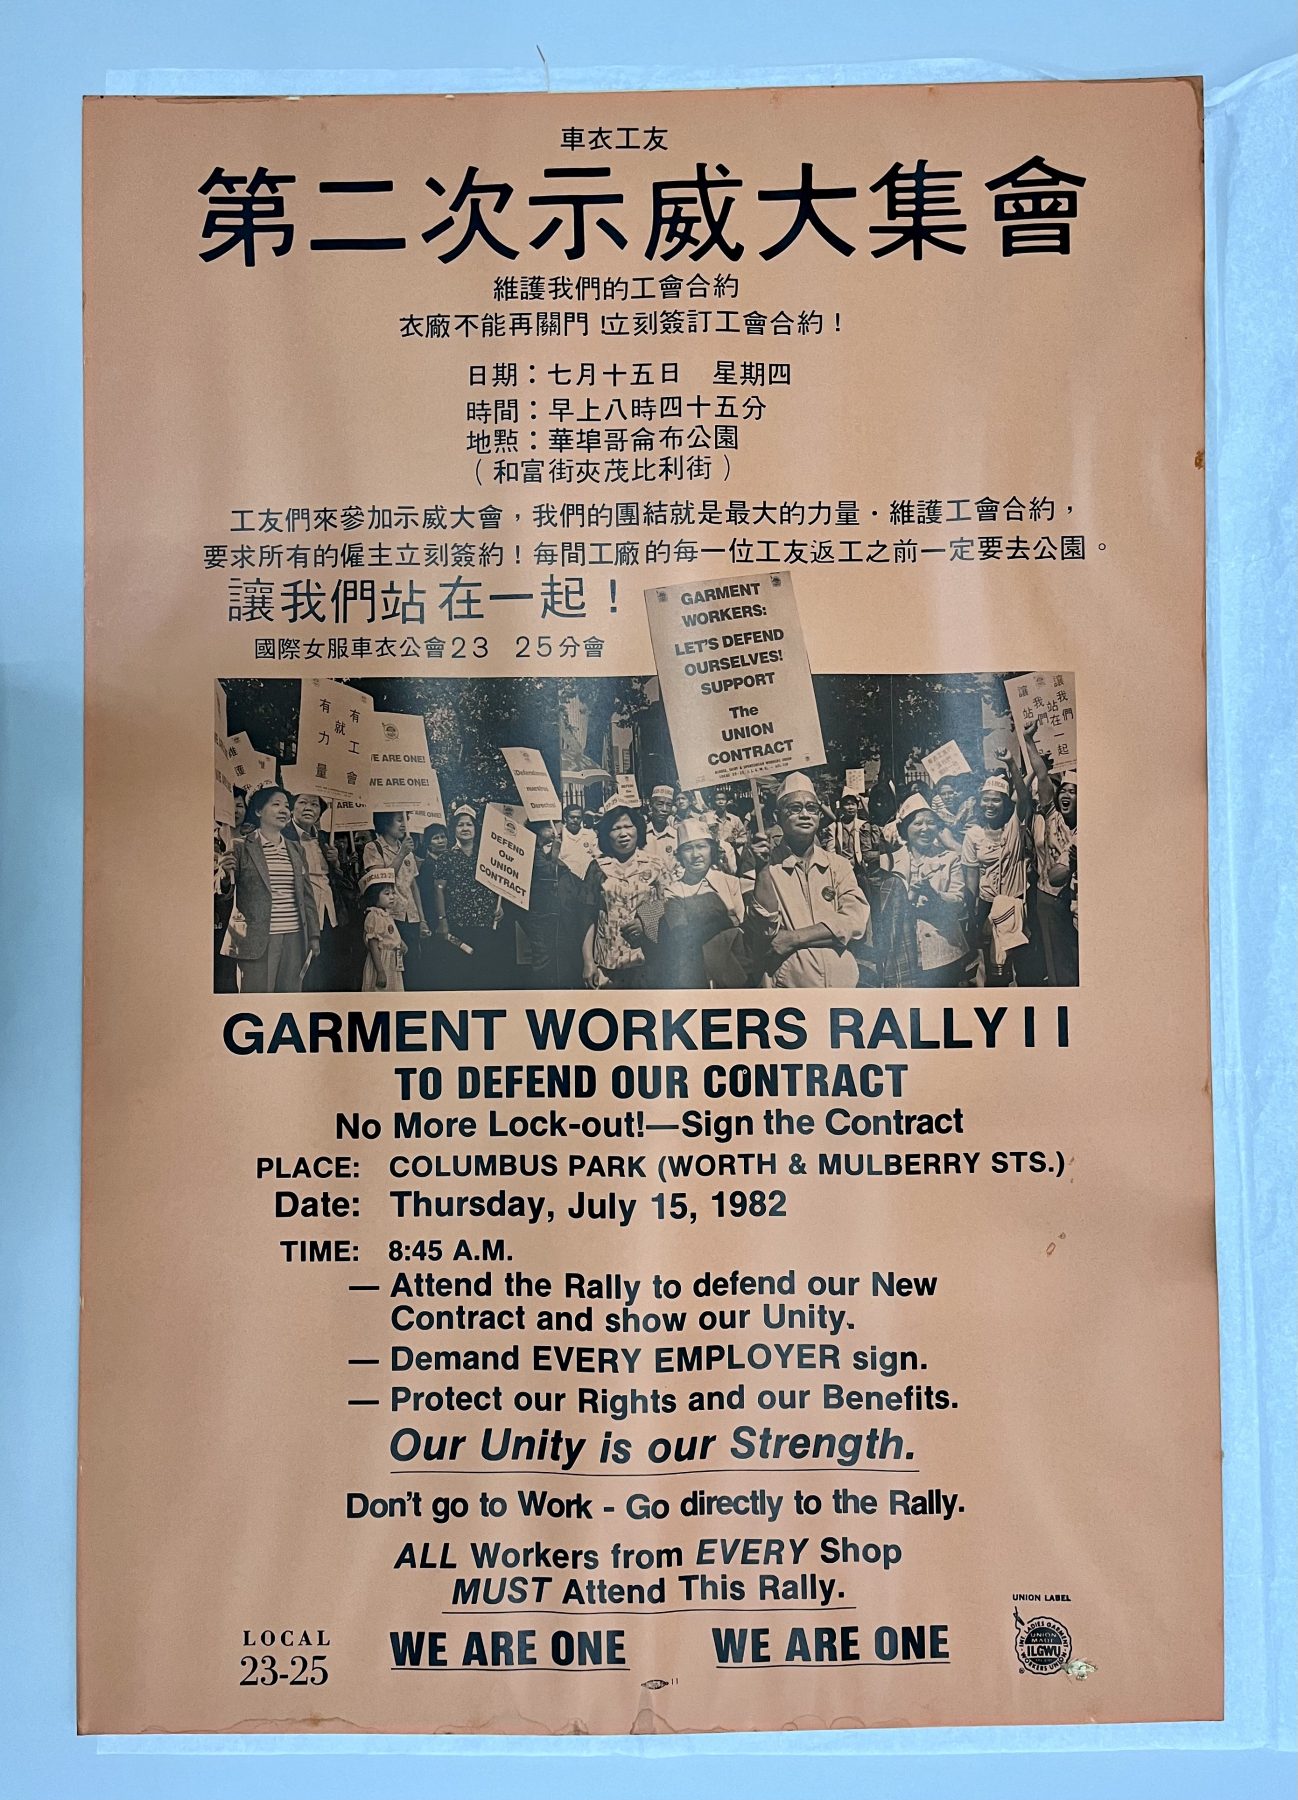 2010.040.027 服装工人集会海报，1982 年 7 月 15 日星期四。橙色背景黑色墨水字。 20 x 29 英寸。美国华人博物馆 (MOCA) 中国运动服工人社团馆藏。